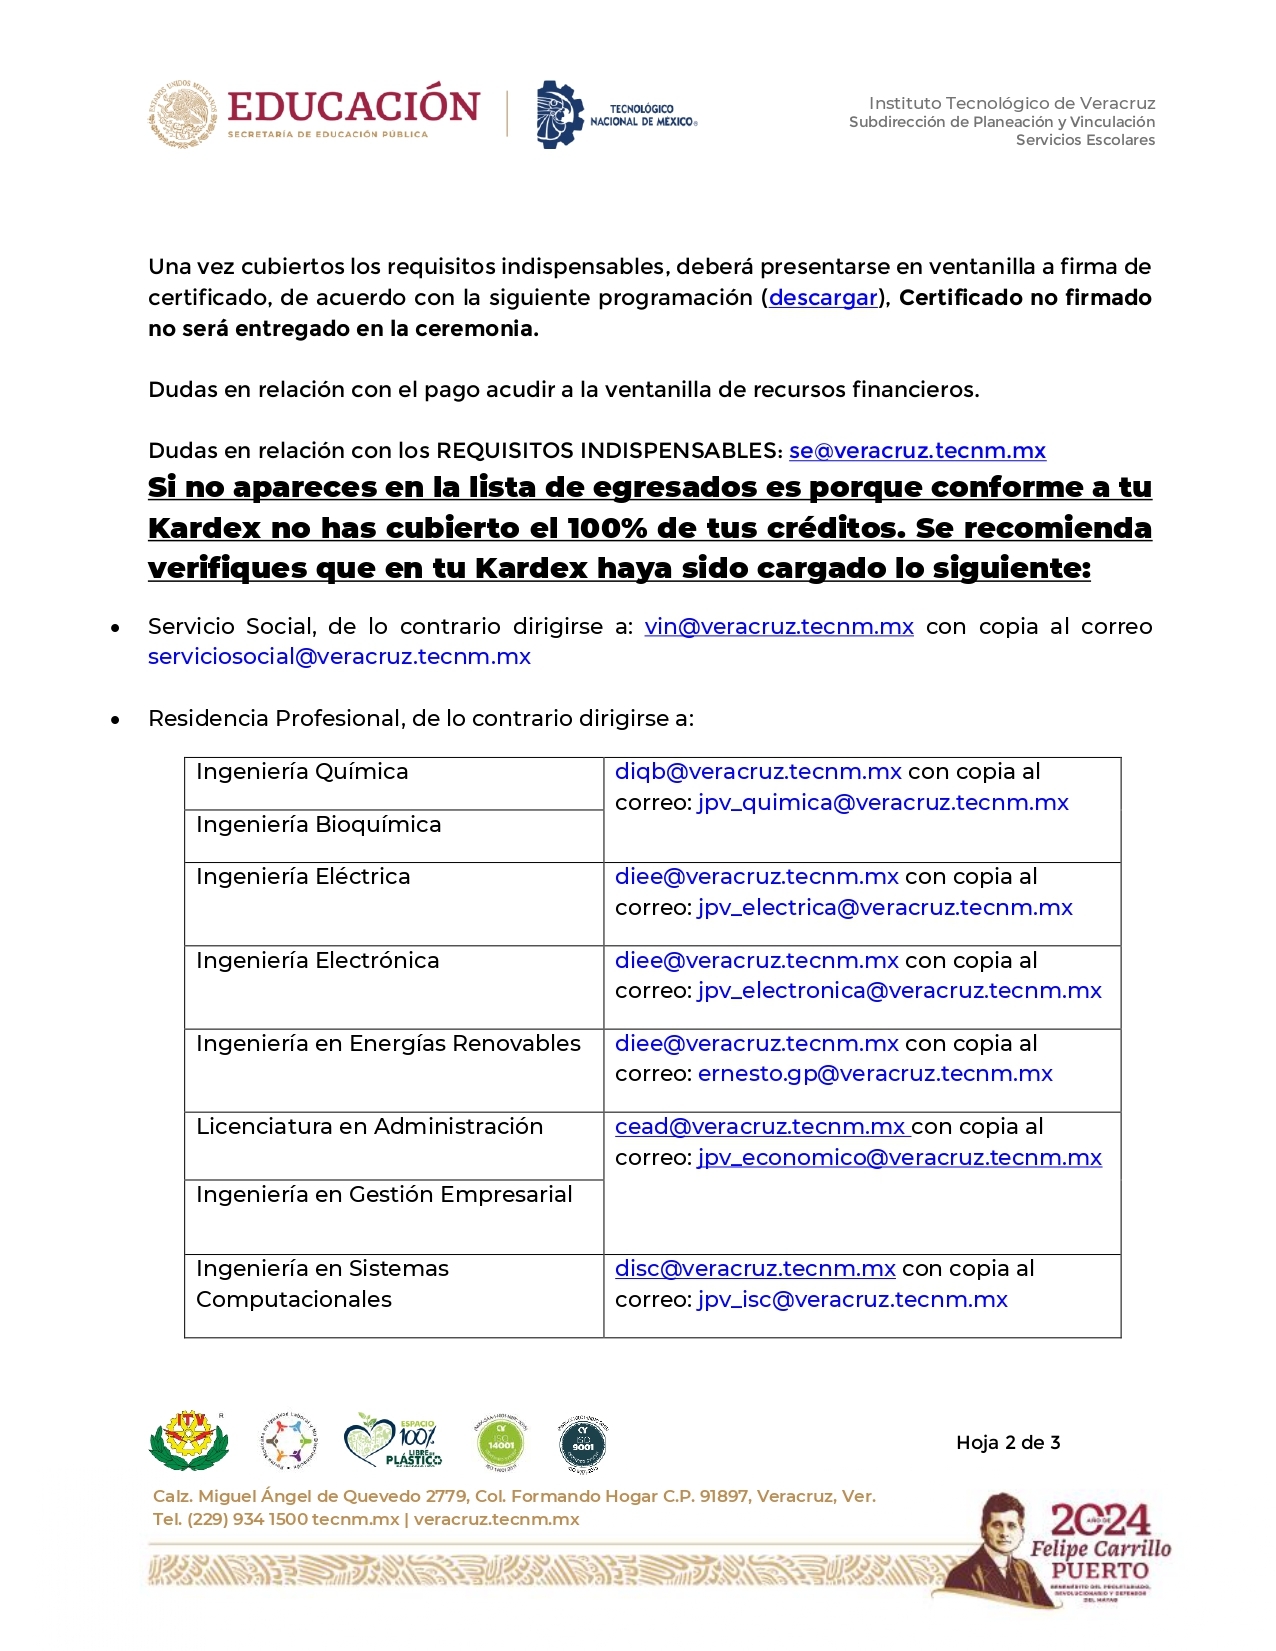 Convocatoria_EgresadosGeneracionAD23_page-0002.jpg